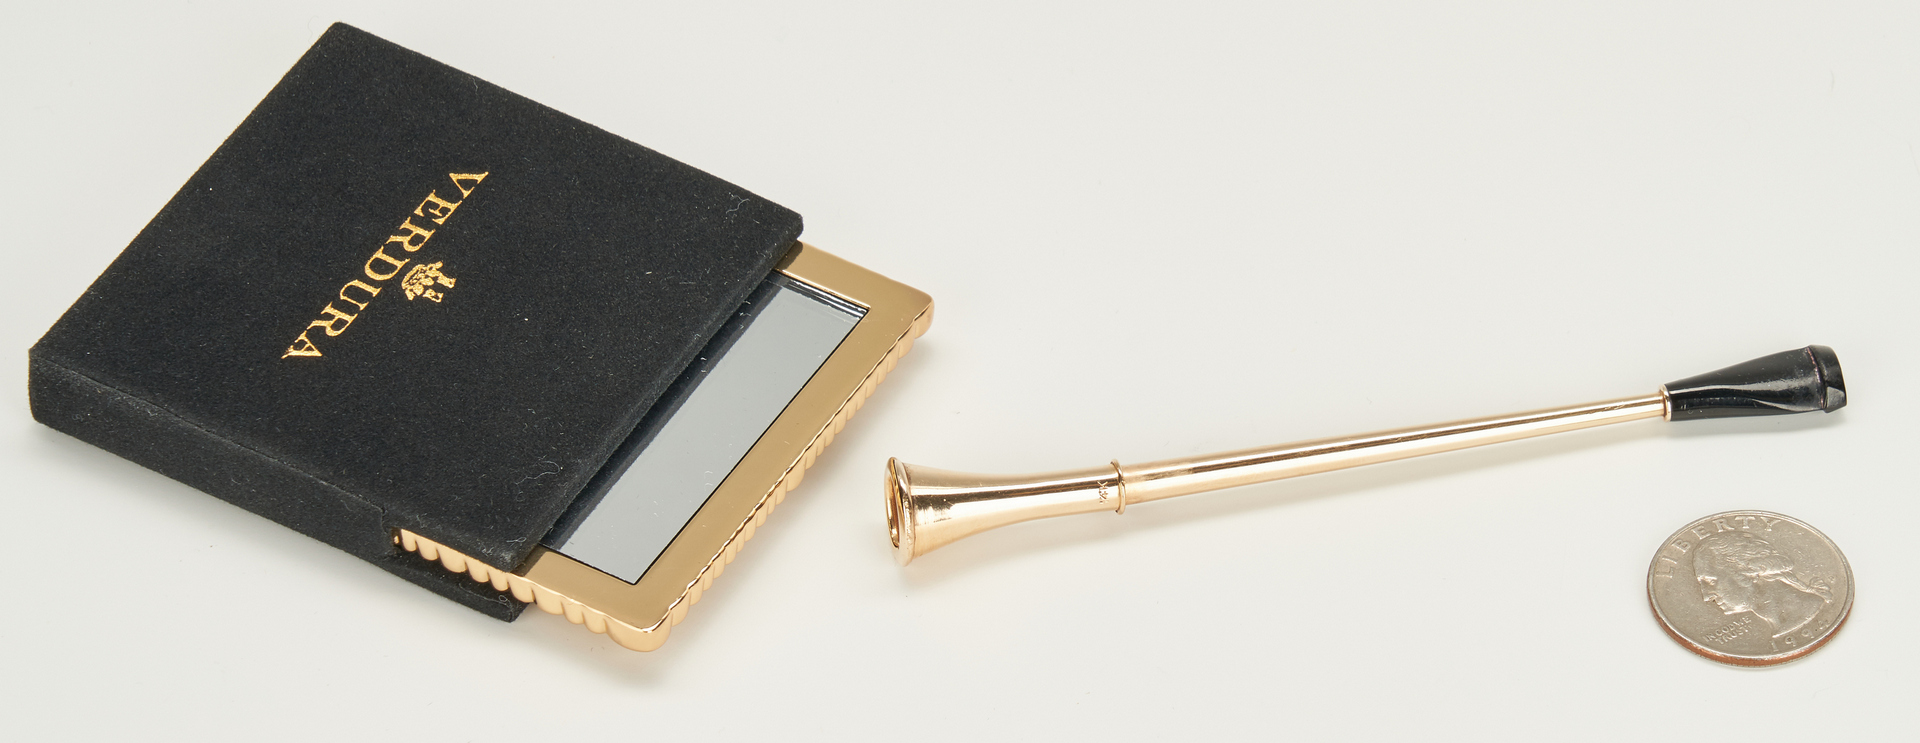 Lot 921: Tiffany Gold Cigarette Holder, Verdura Pocket Mirror, 2 items